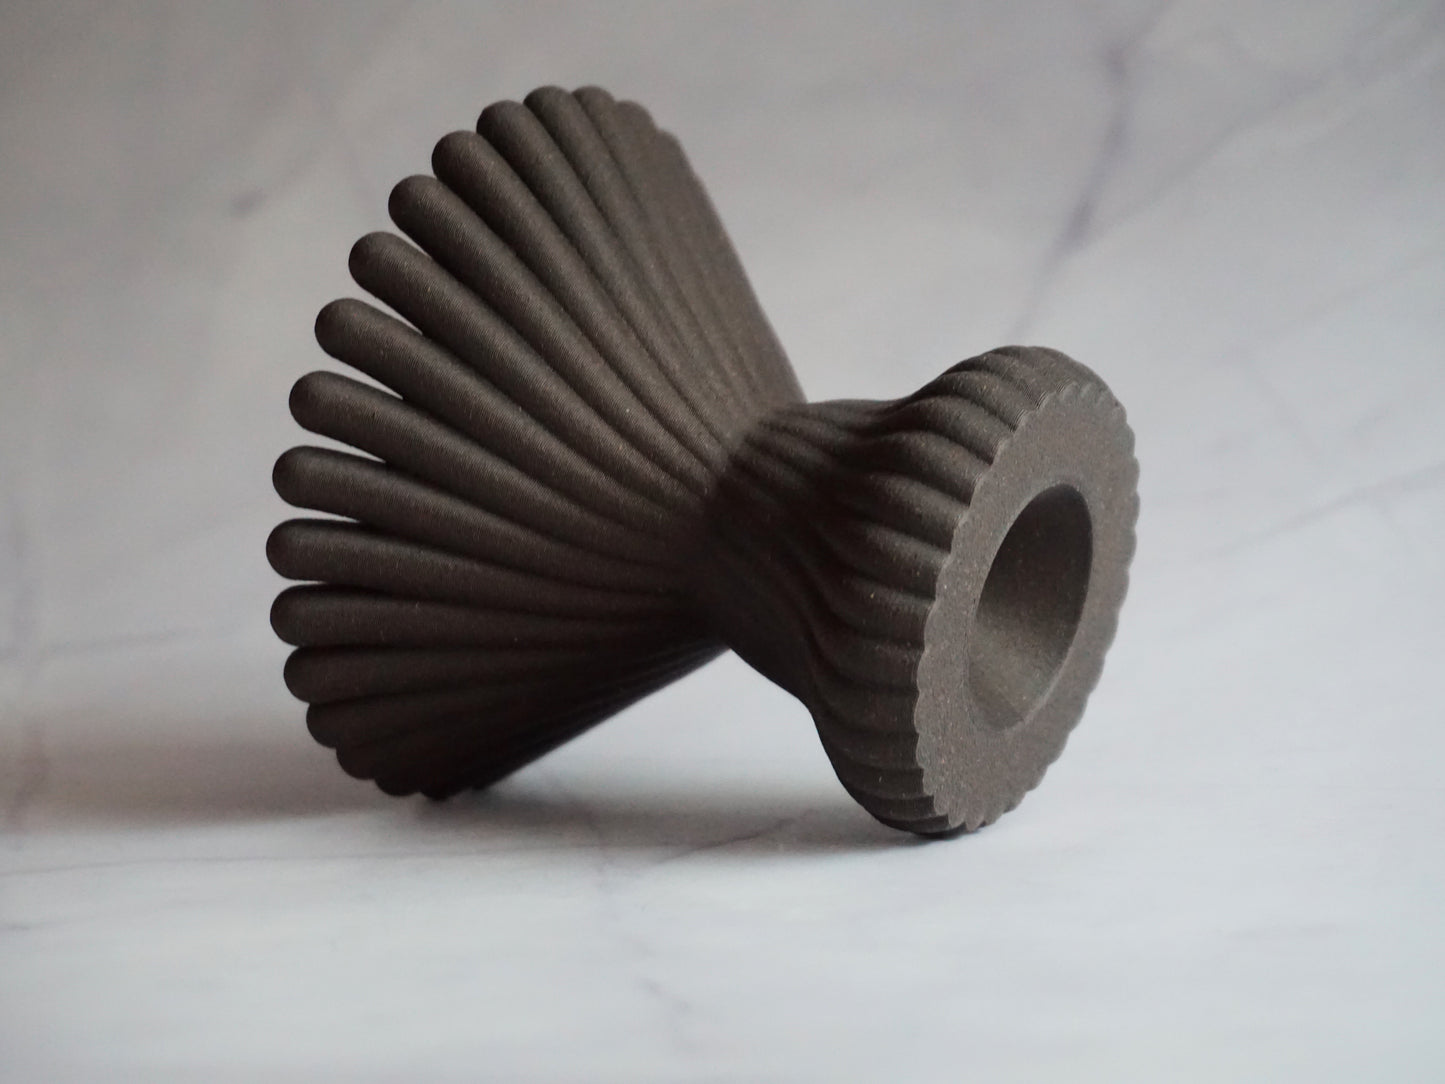 3D Printed Incense Holder